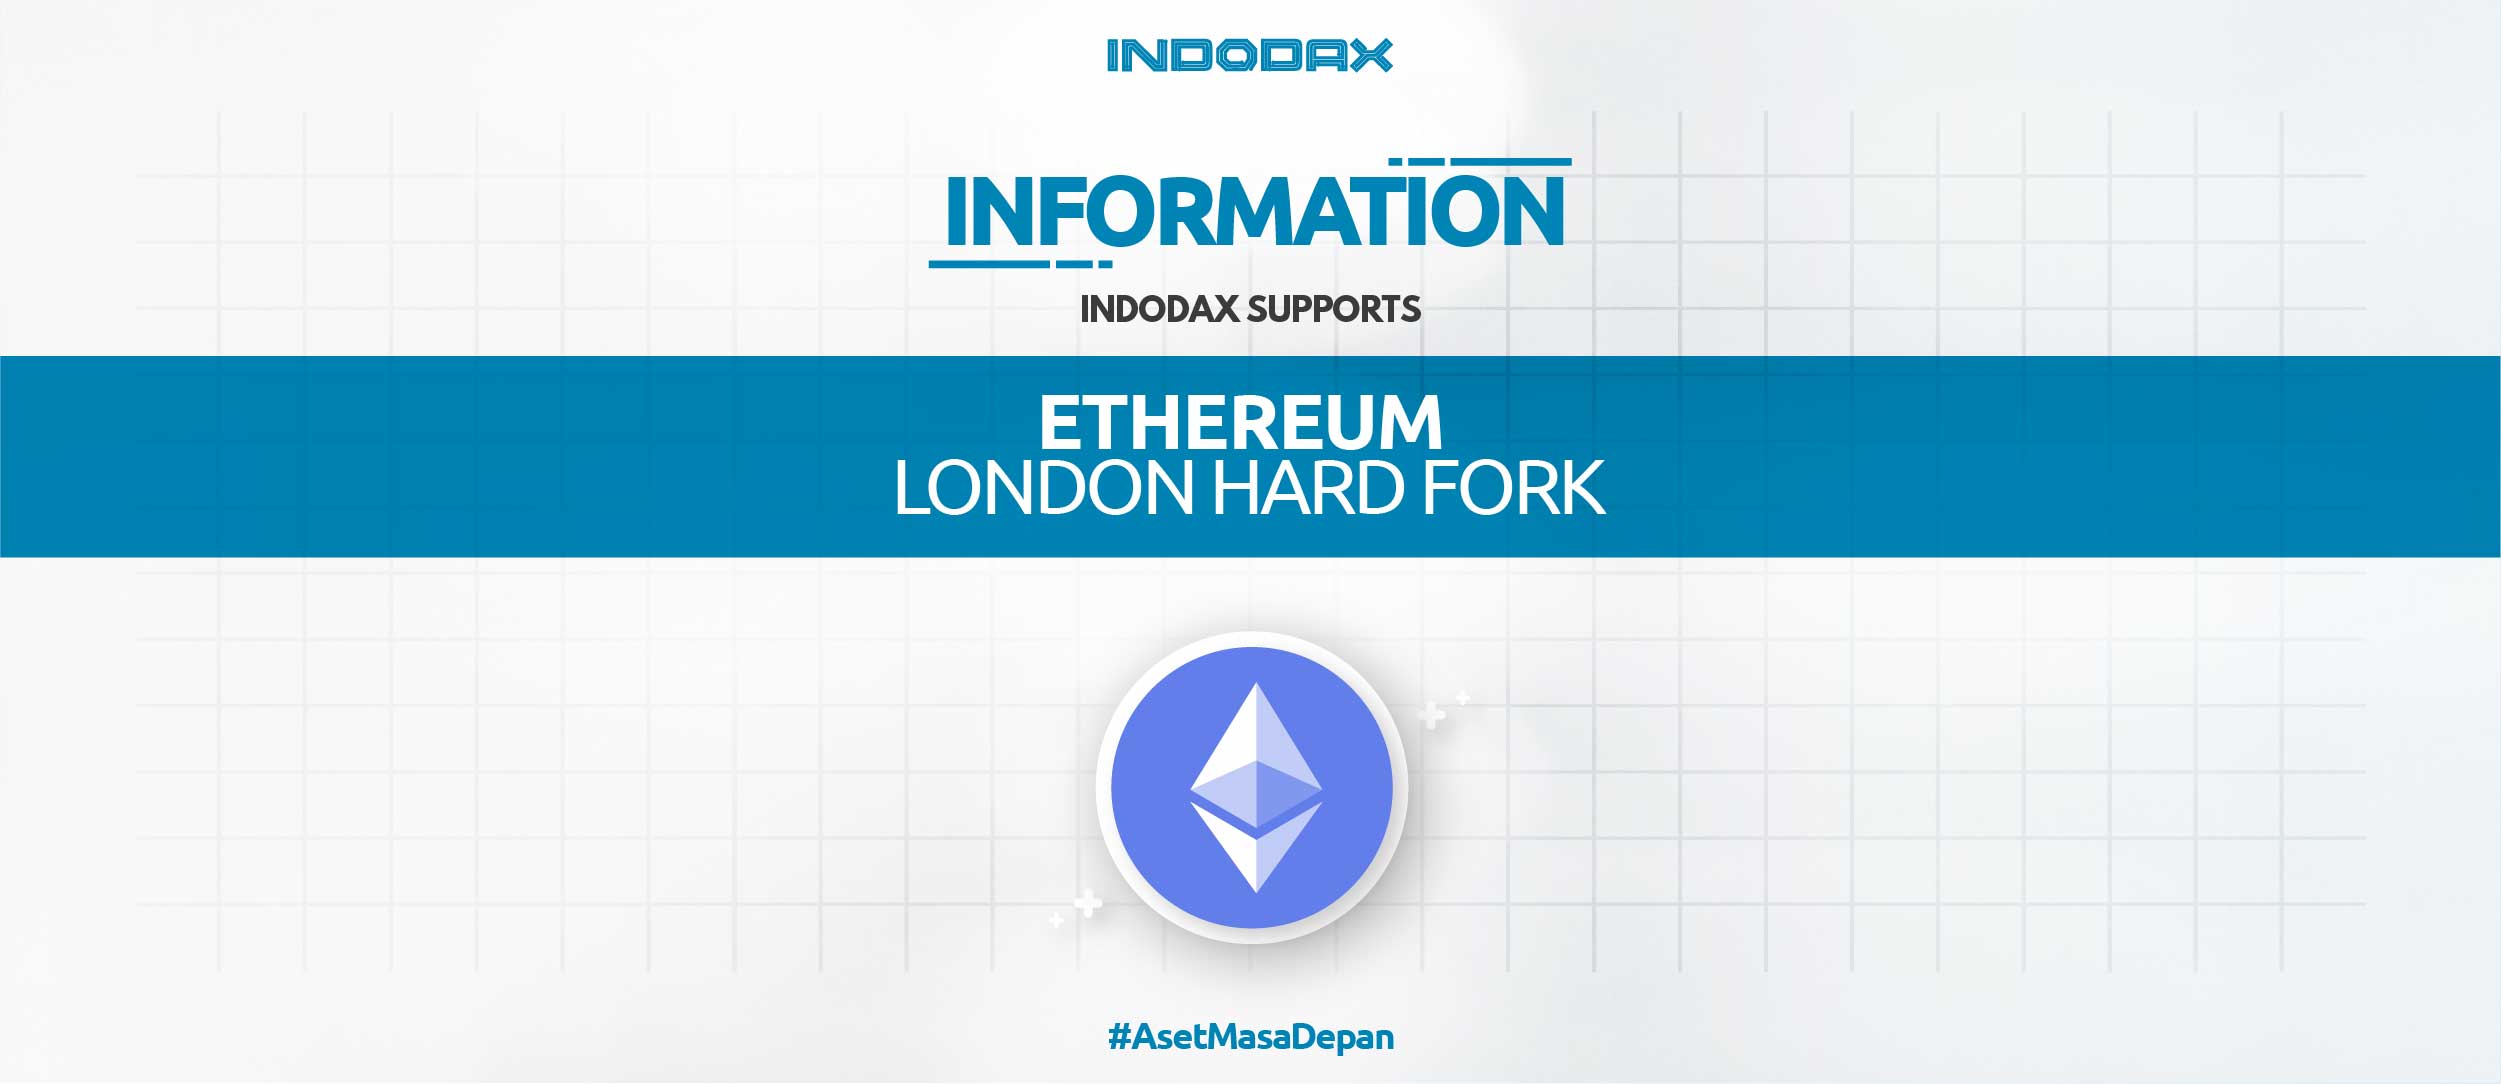 Indodax ingin mengkonfirmasi dukungan untuk London hard fork Ethereum yang akan datang. Blockchain Ethereum (ETH) diperkirakan akan menjalani Hard Fork pada ketinggian blok 12.965.000 atau sekitar tanggal 5 Agustus 2021 pada jam 18:55 WIB. Kegiatan Hard Fork ini tidak menghasilkan token atau coin baru.